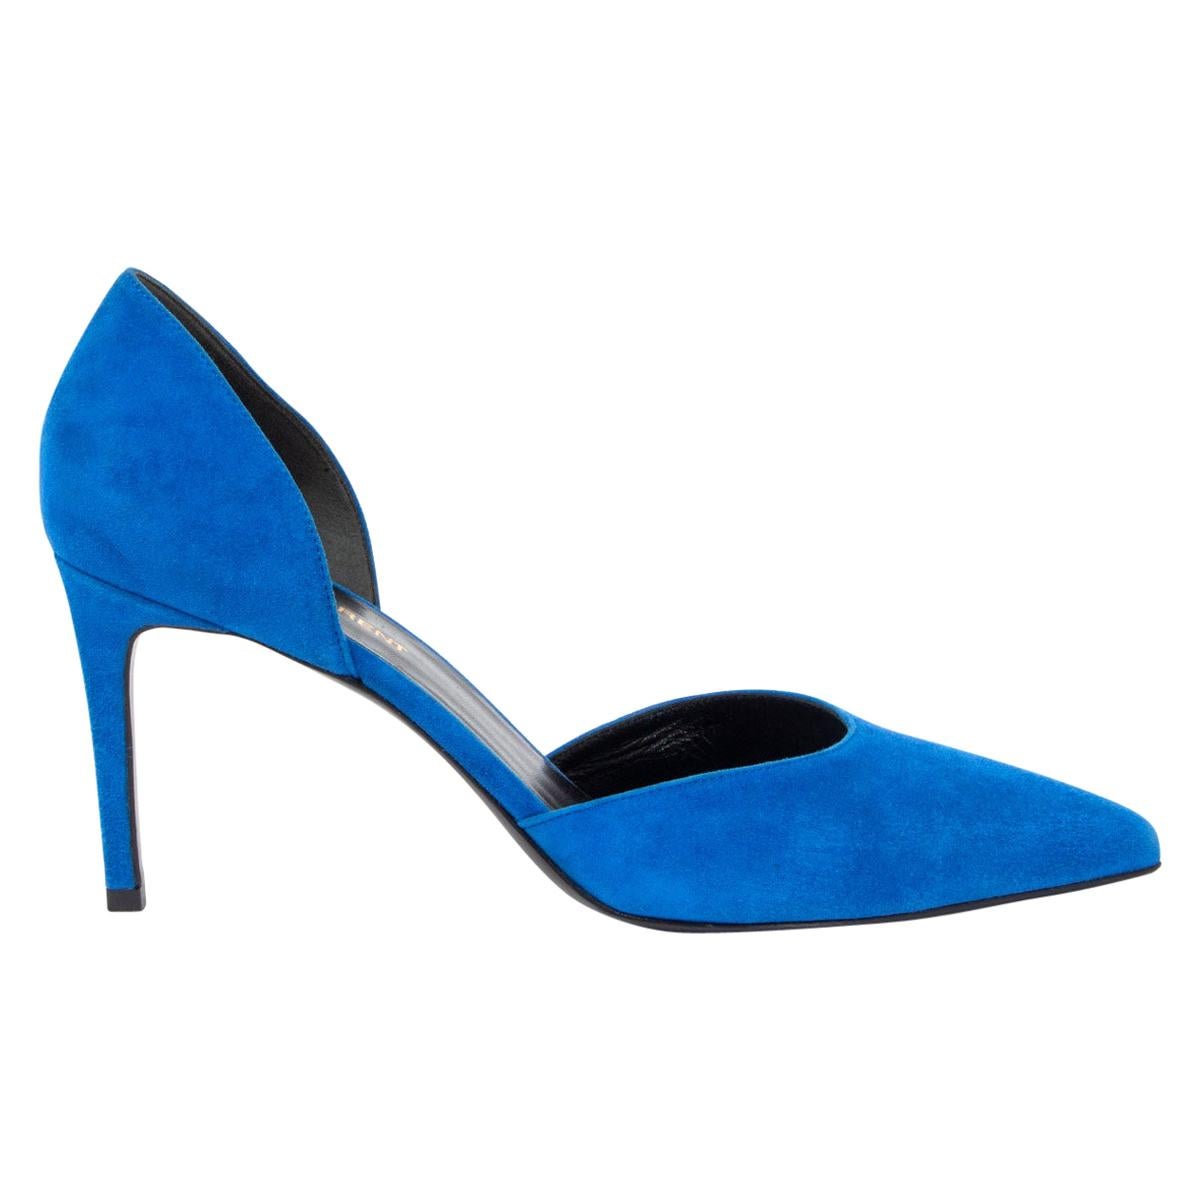 SAINT LAURENT blue suede D'ORSAY Pumps Shoes 40